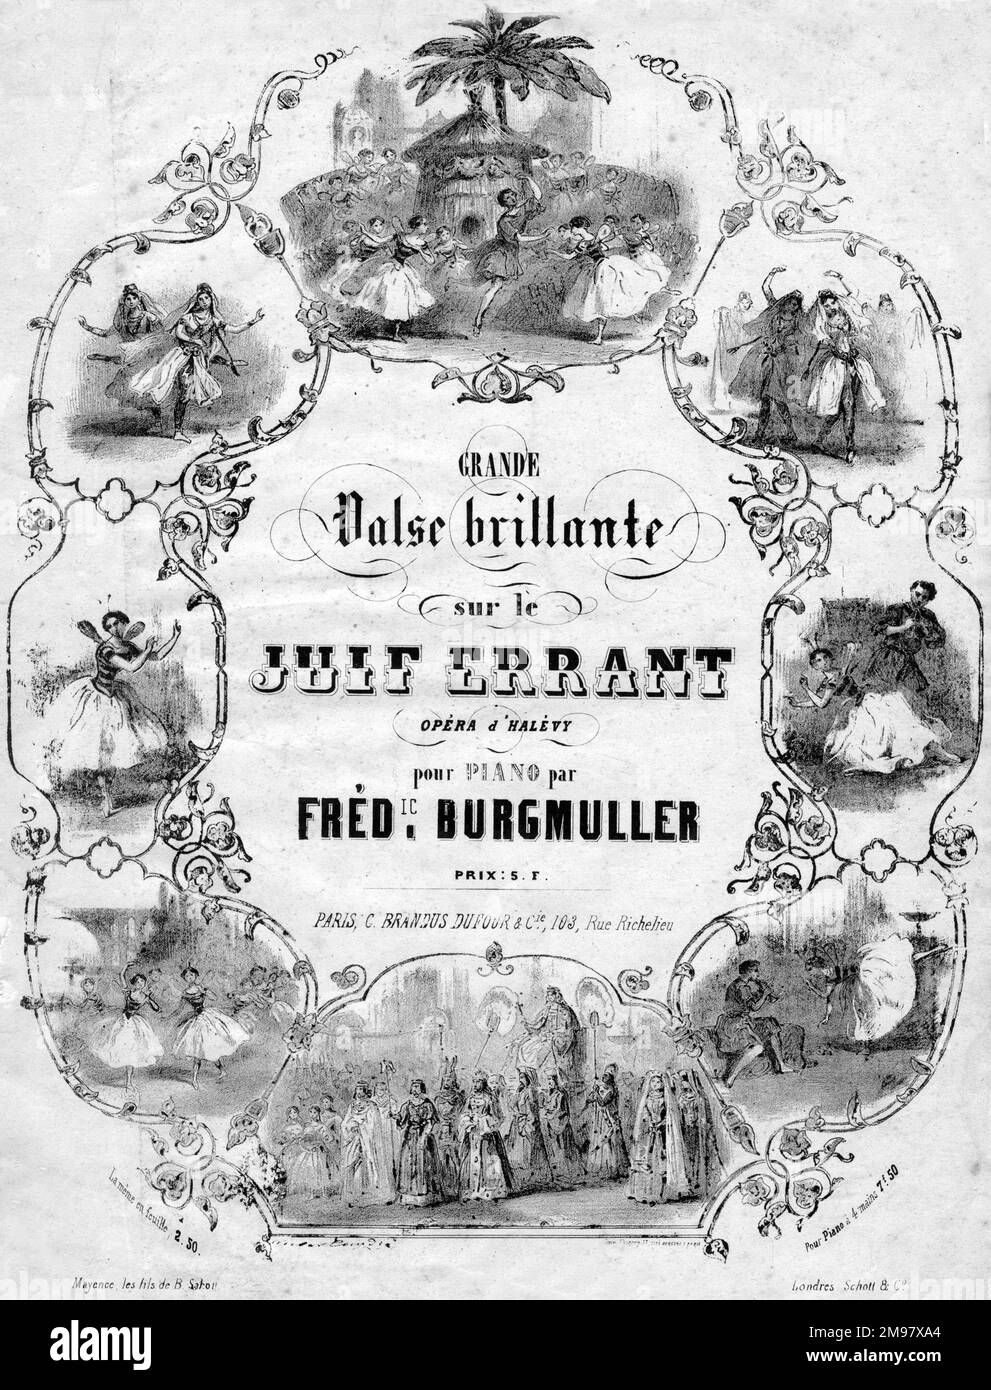 Titelbild: Grande Valse Brillante sur le Juif errant (wandernder Jude), Oper von Halevy, für das Klavier geschrieben von Frederic Burgmuller. Stockfoto